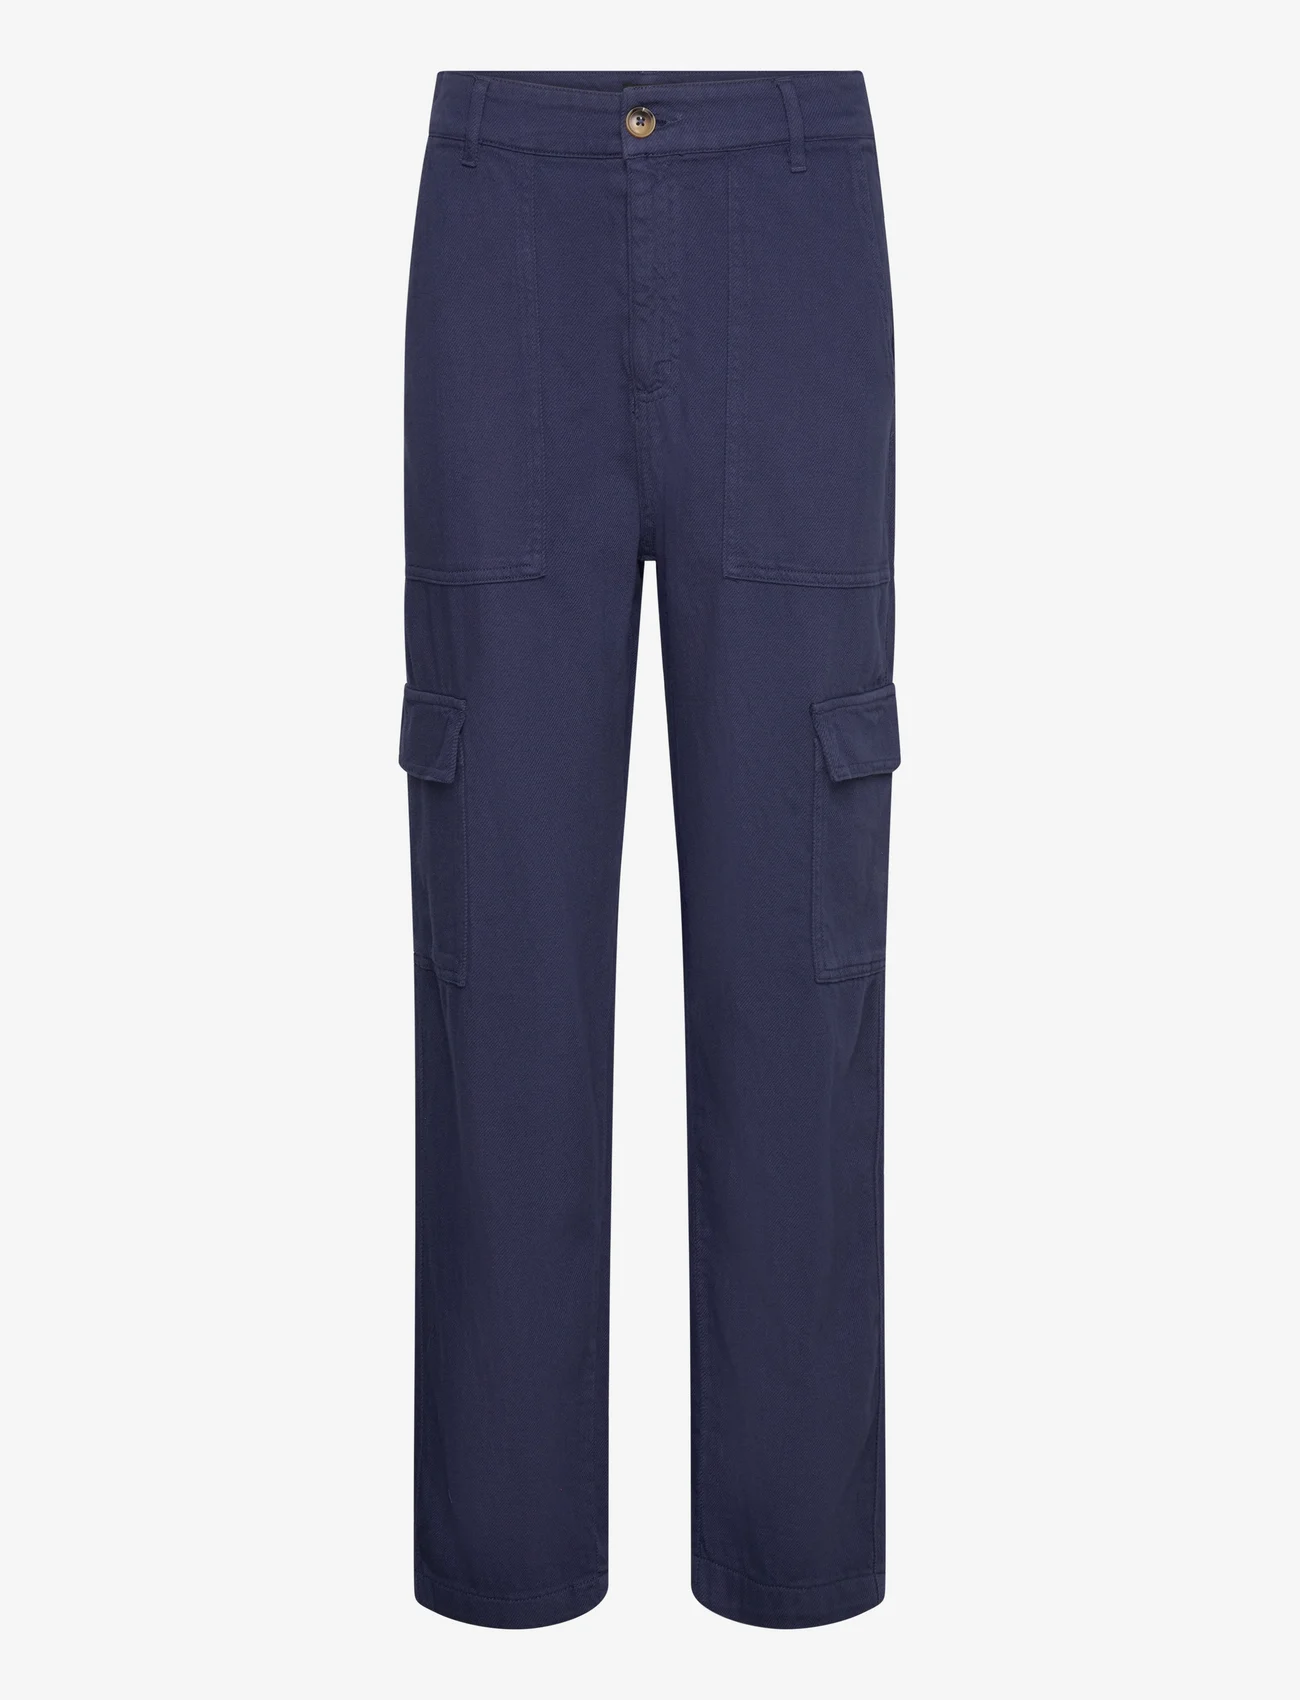 Lindex - Trouser Suzette patch pocket - cargo pants - dark blue - 0